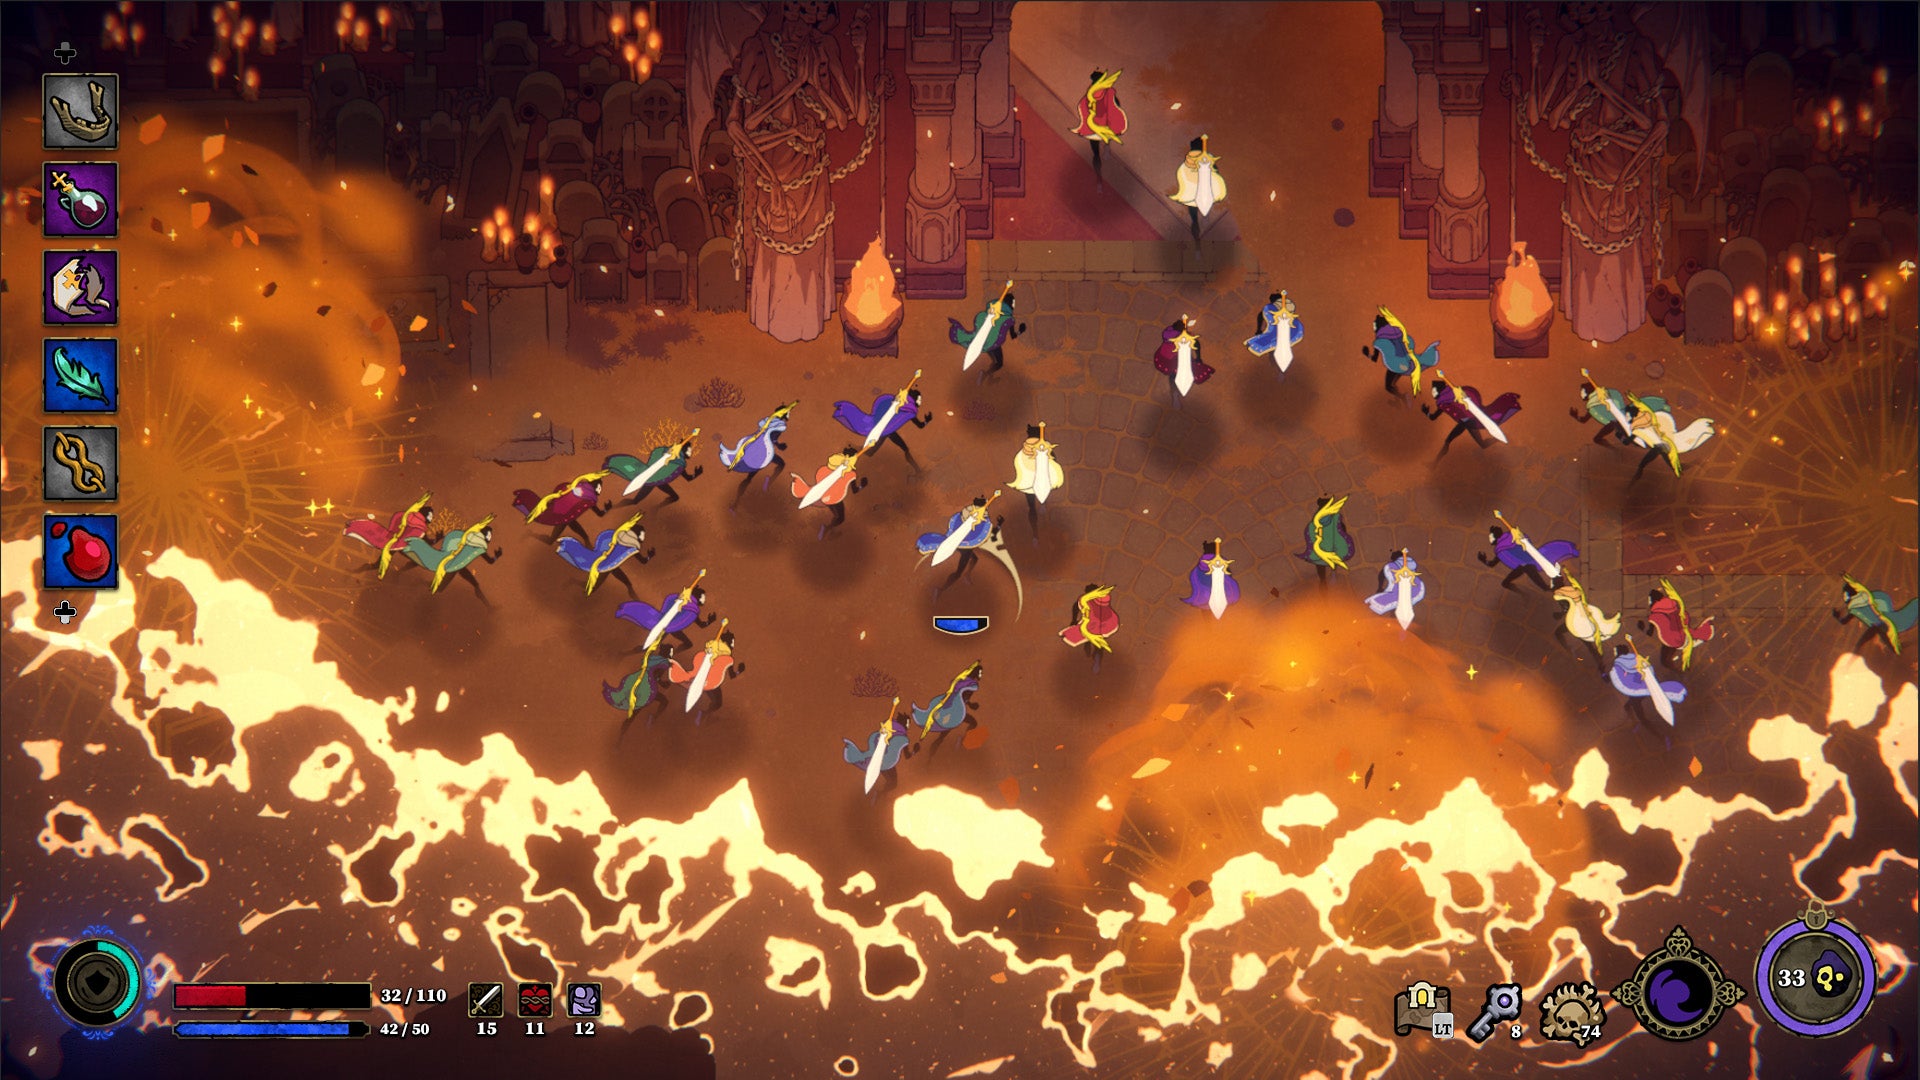 一张自顶向下的图片，数十名背着剑的玩家跑进一个建筑物。他们被火追击着。整个画面拥有沙漠般的美感。